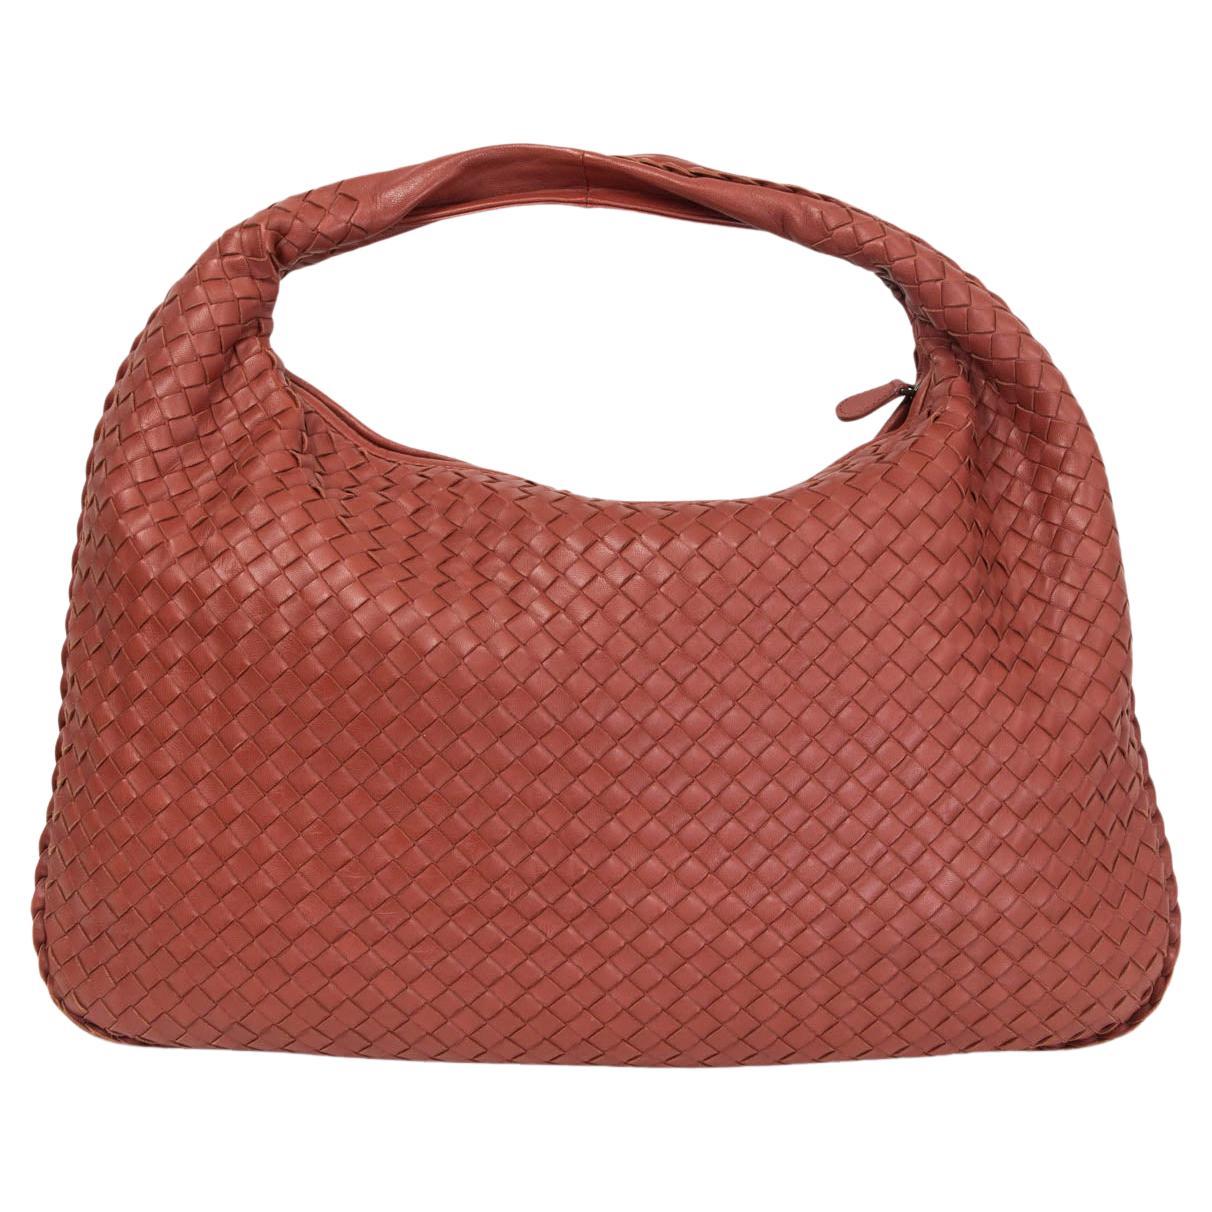 Authentic BOTTEGA VENETA Intrecciato Shoulder Bag Leather Red